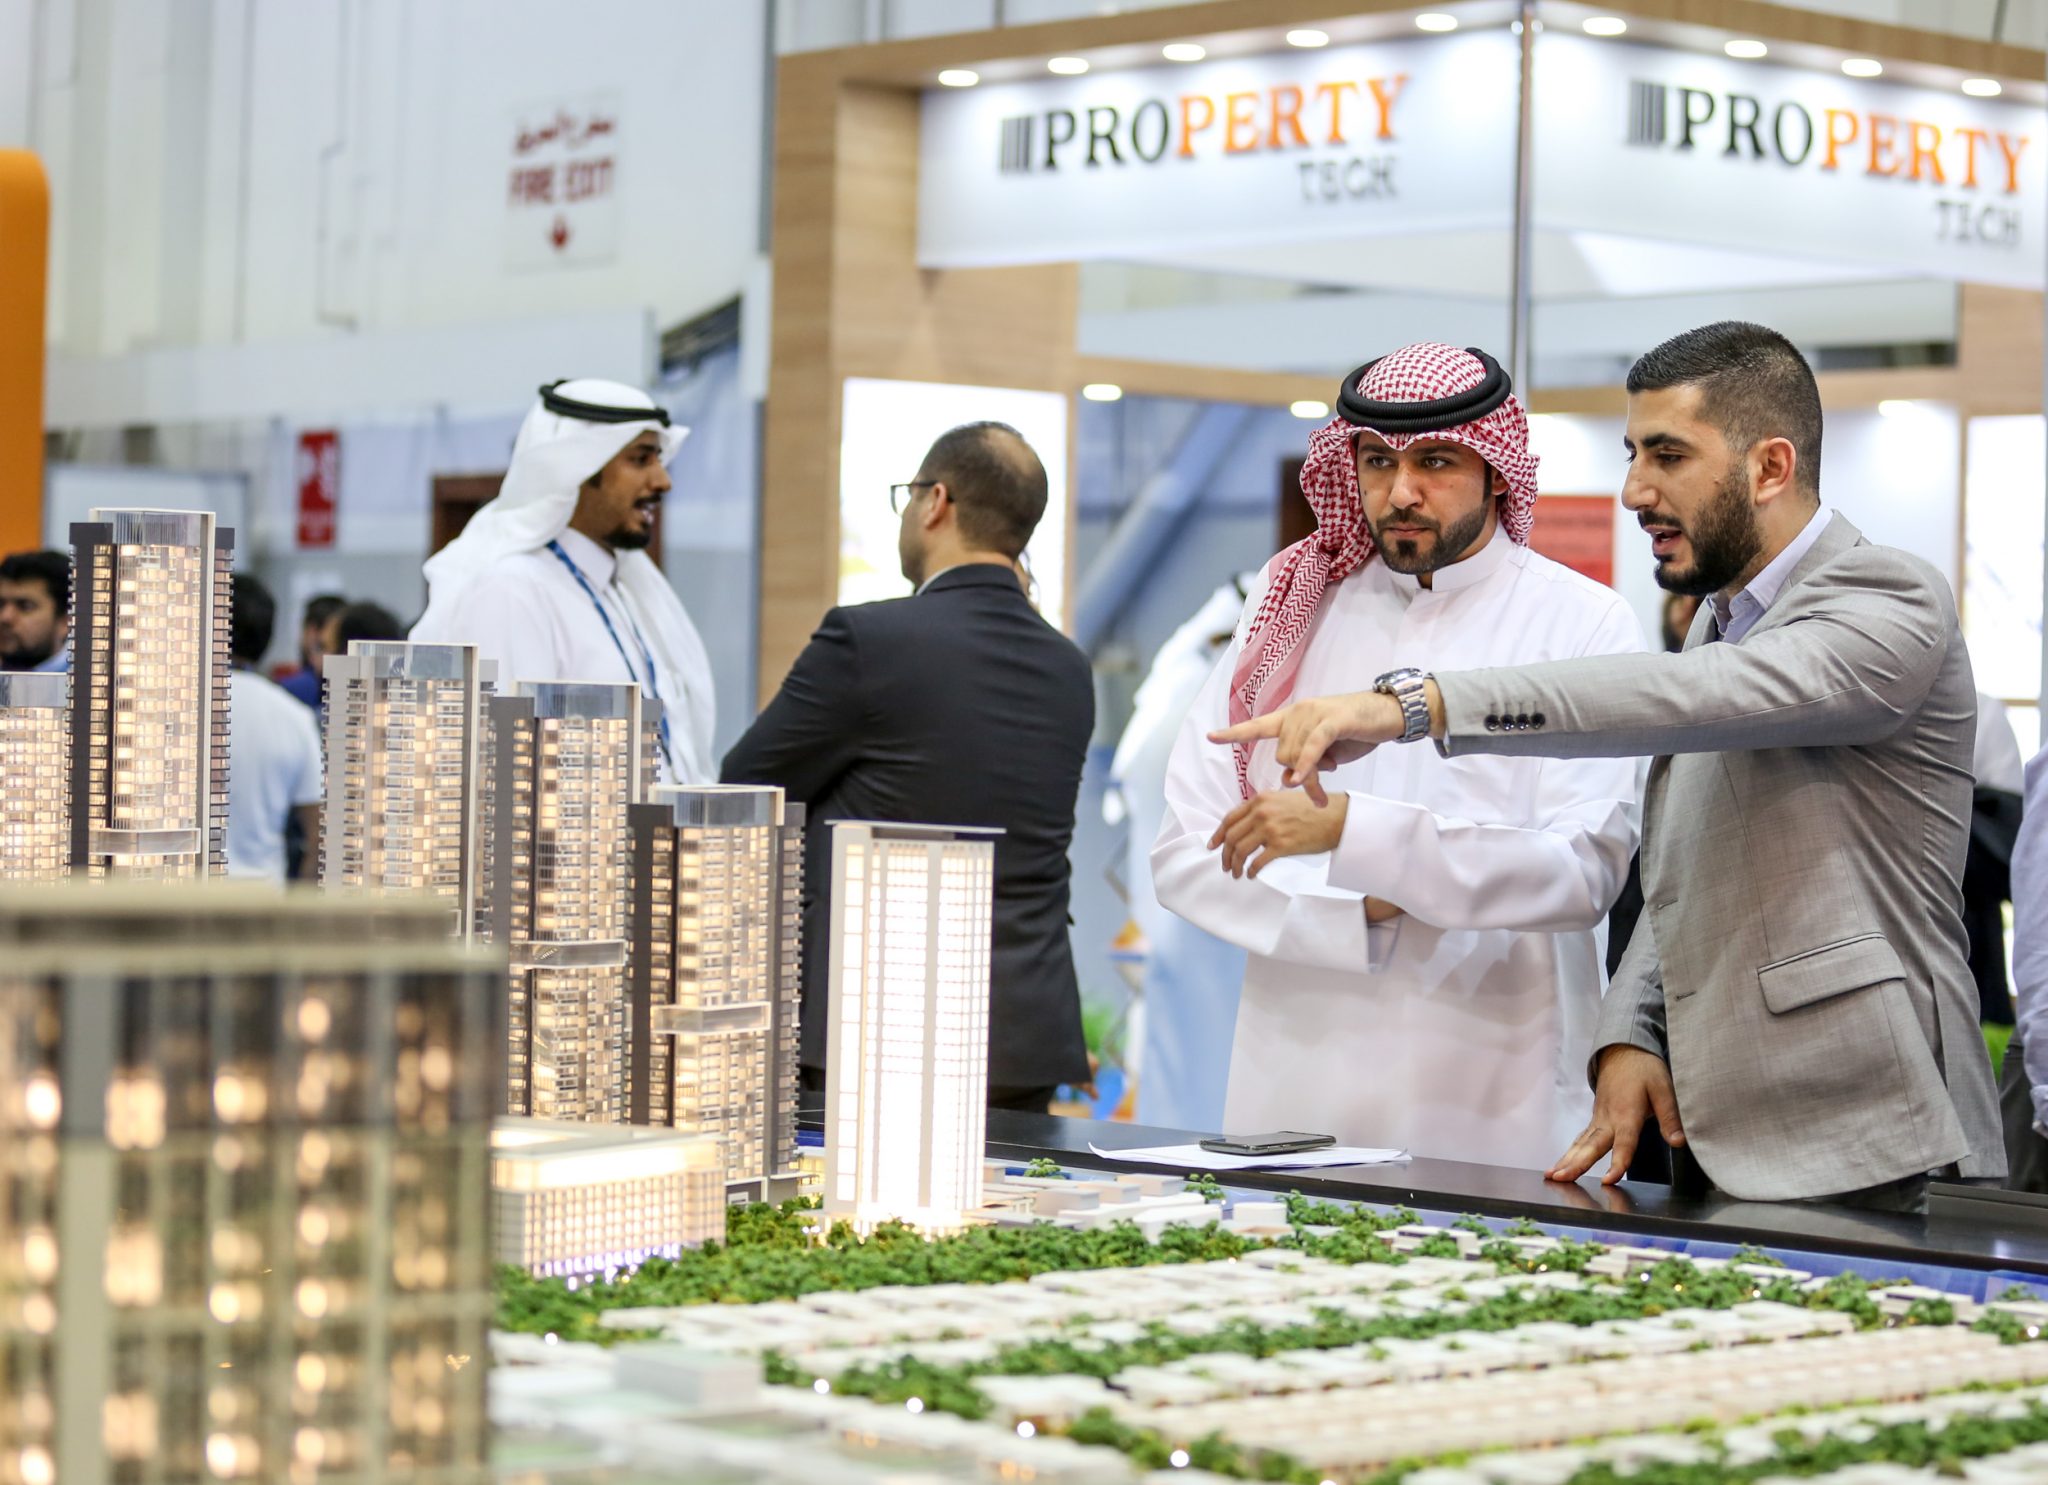 دبي تستضيف النسخة السنوية للمعرض العقاري سيتي سكيب العالمي 2020